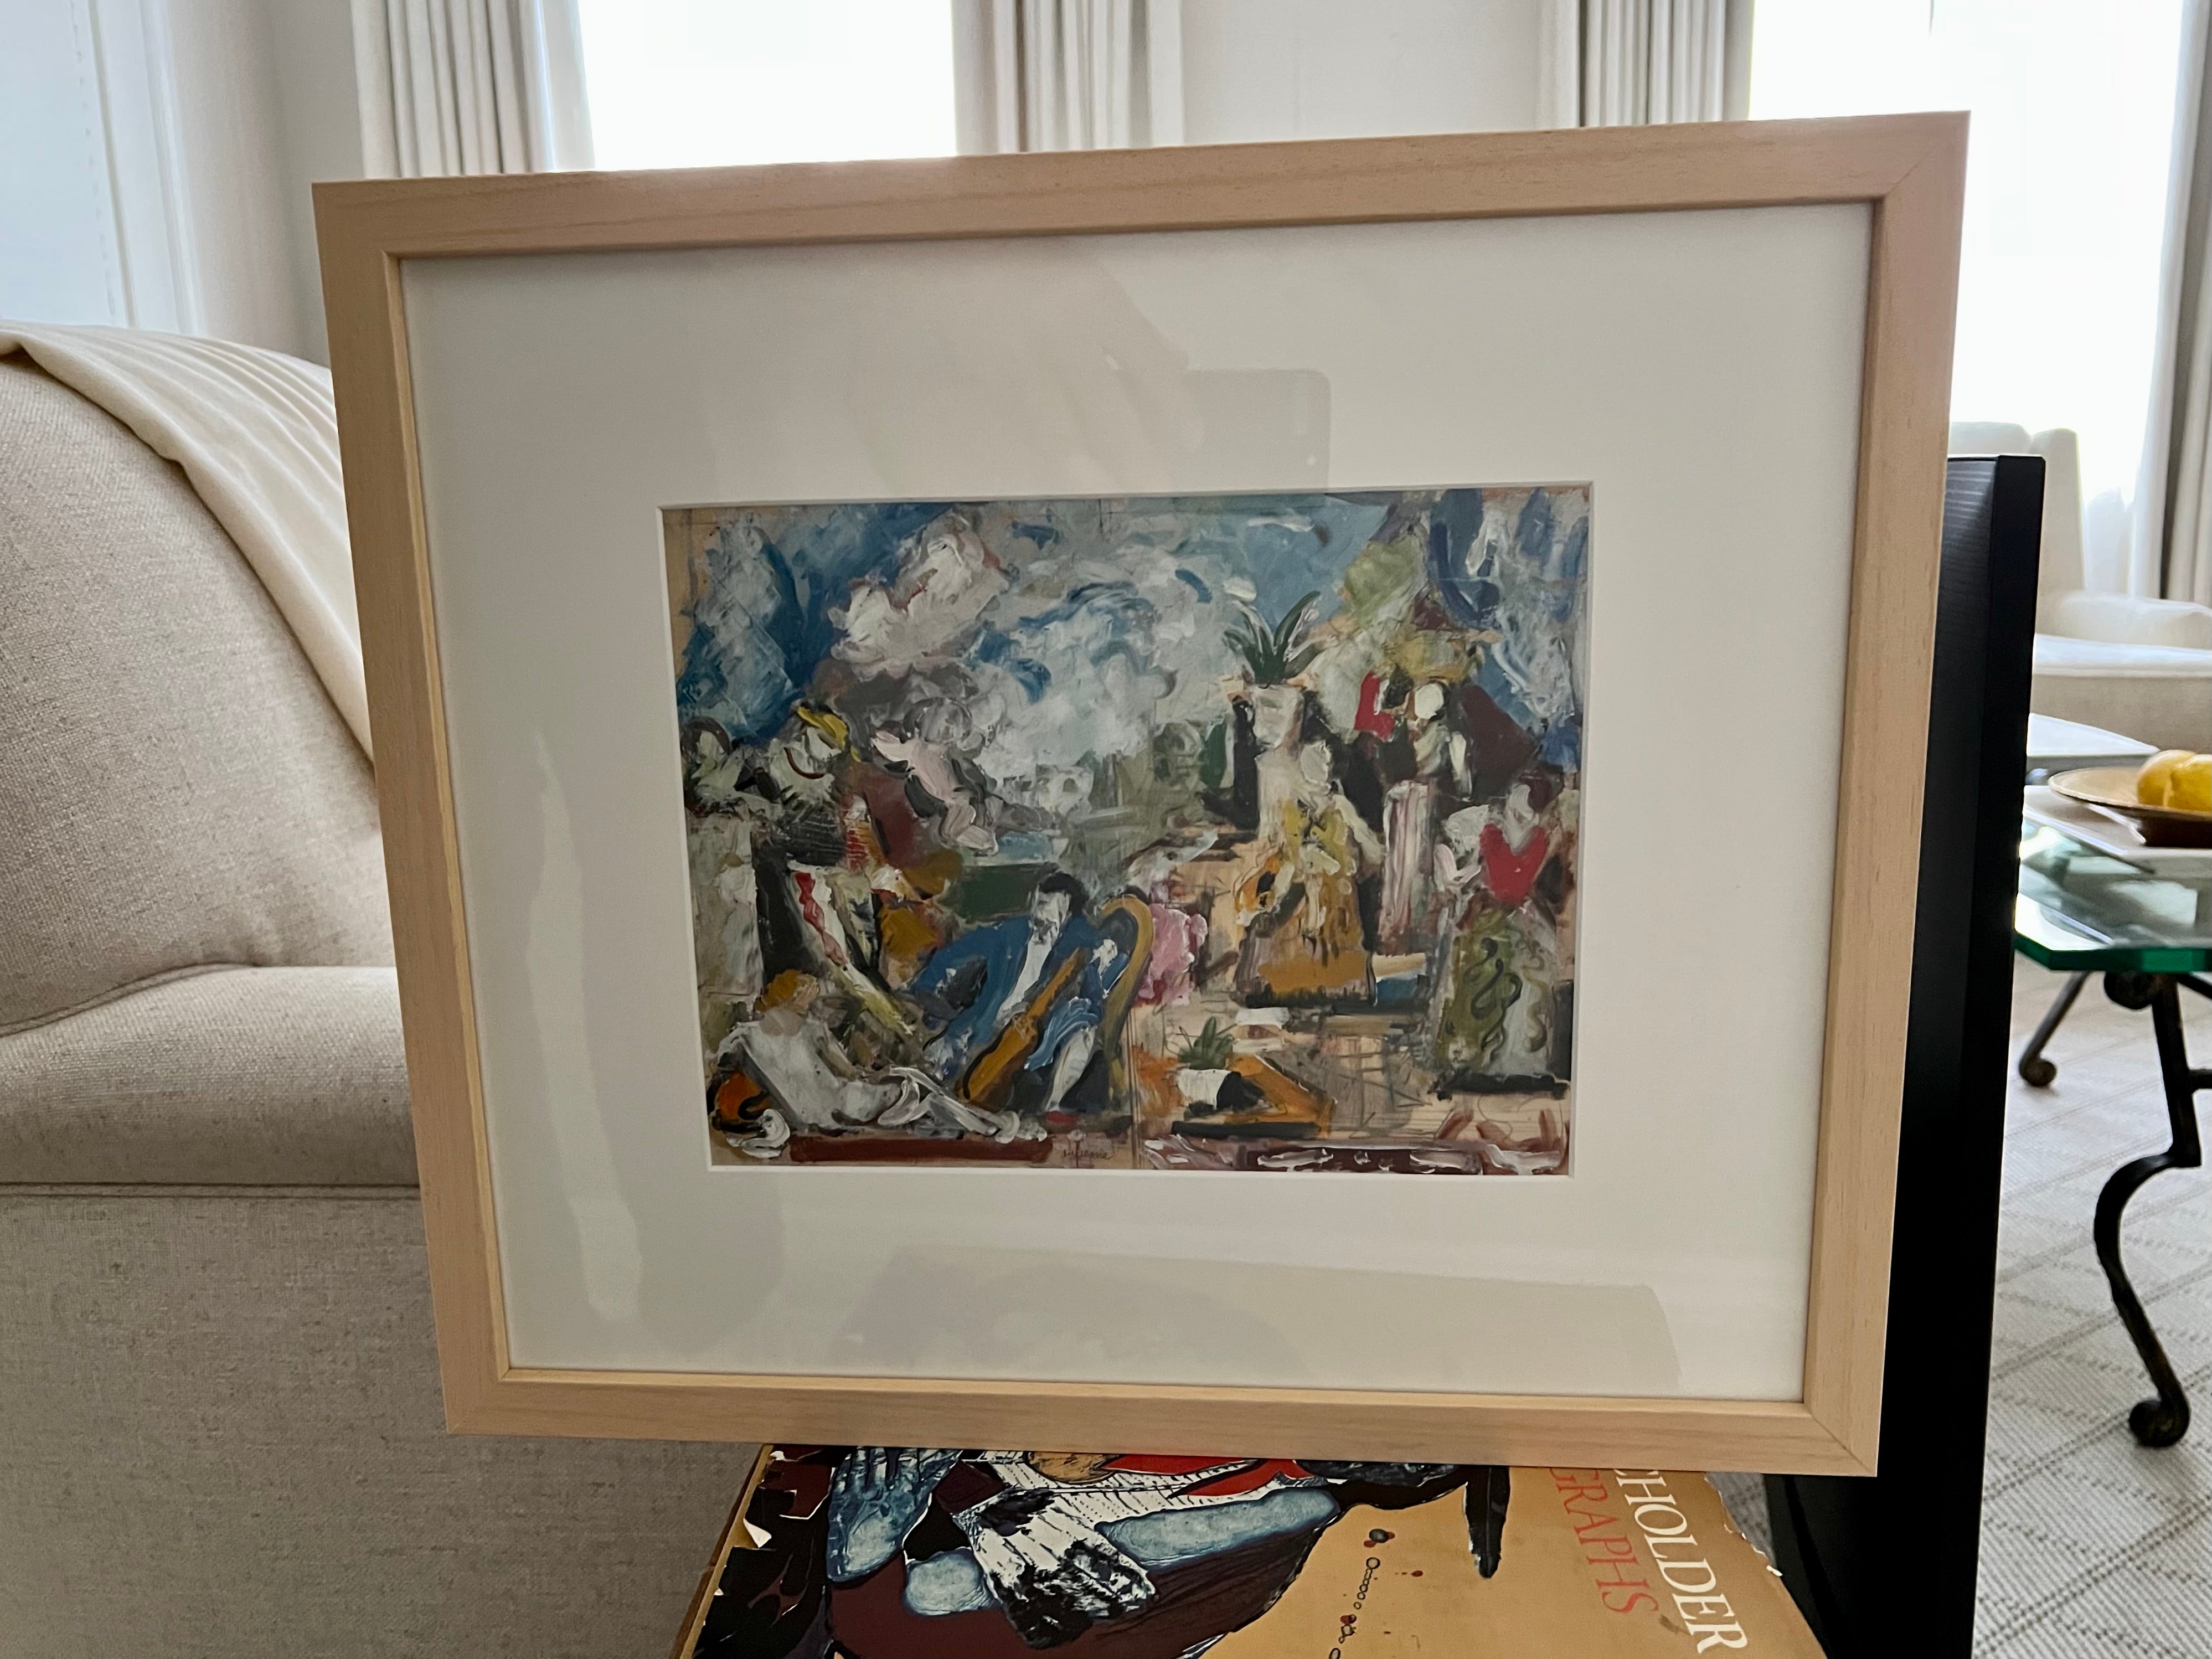 Aquarelle avec superposition de peinture de l'artiste français Charles-George Dufresne. Scène représentant une salle de cour royale avec plusieurs personnages. 

La pièce mesure 8